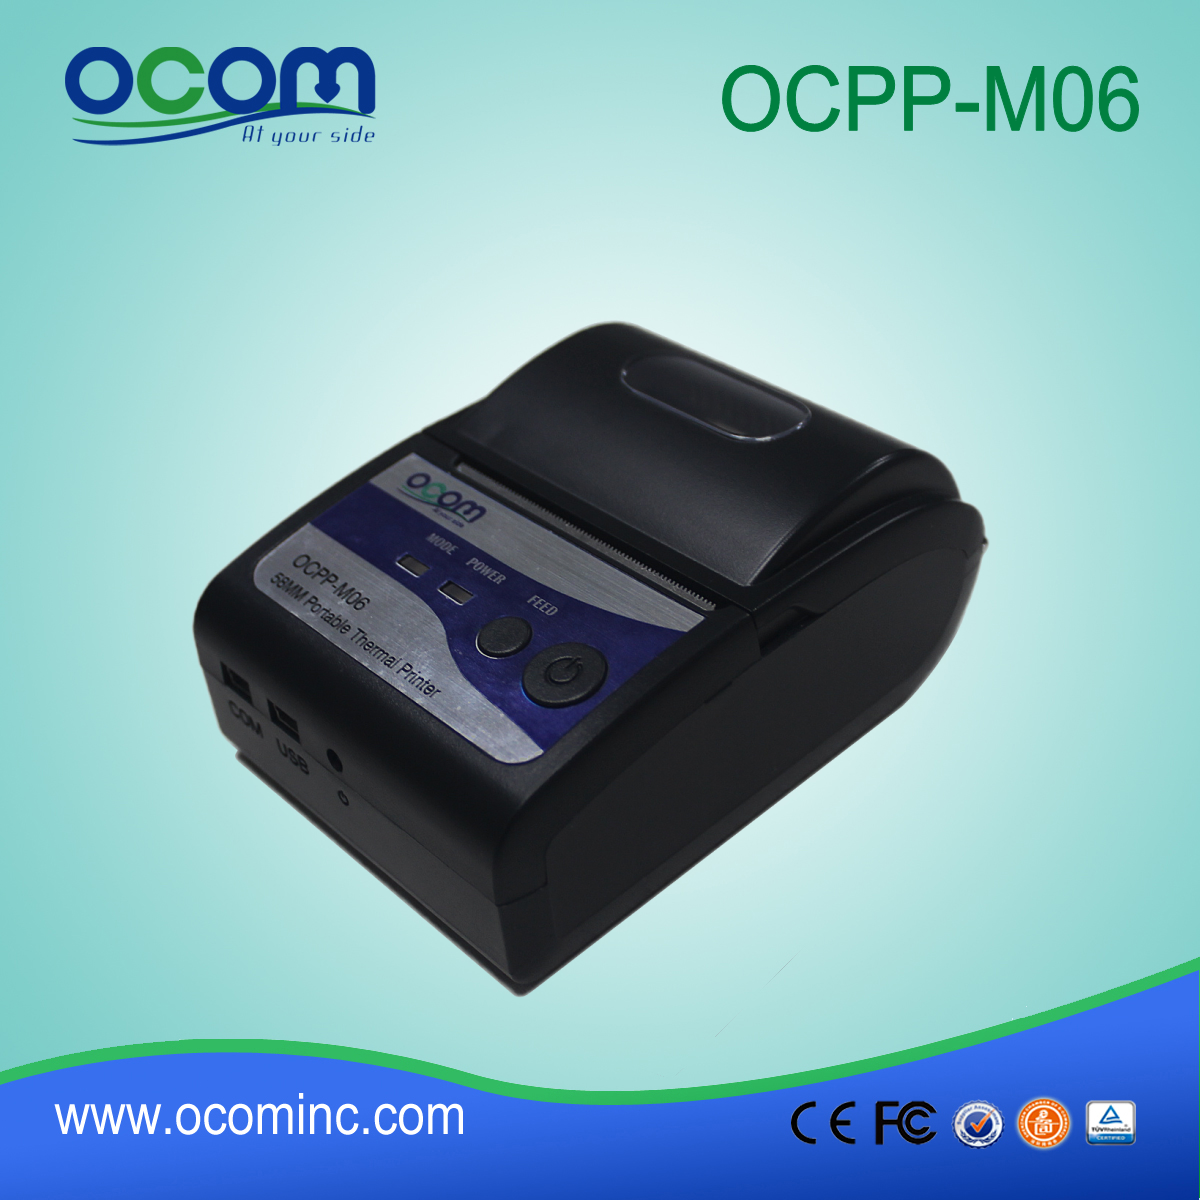 OCPP-M06: Chiny fabryka tania drukarka termiczna 2 calowy, drukarka termiczna 2 cale